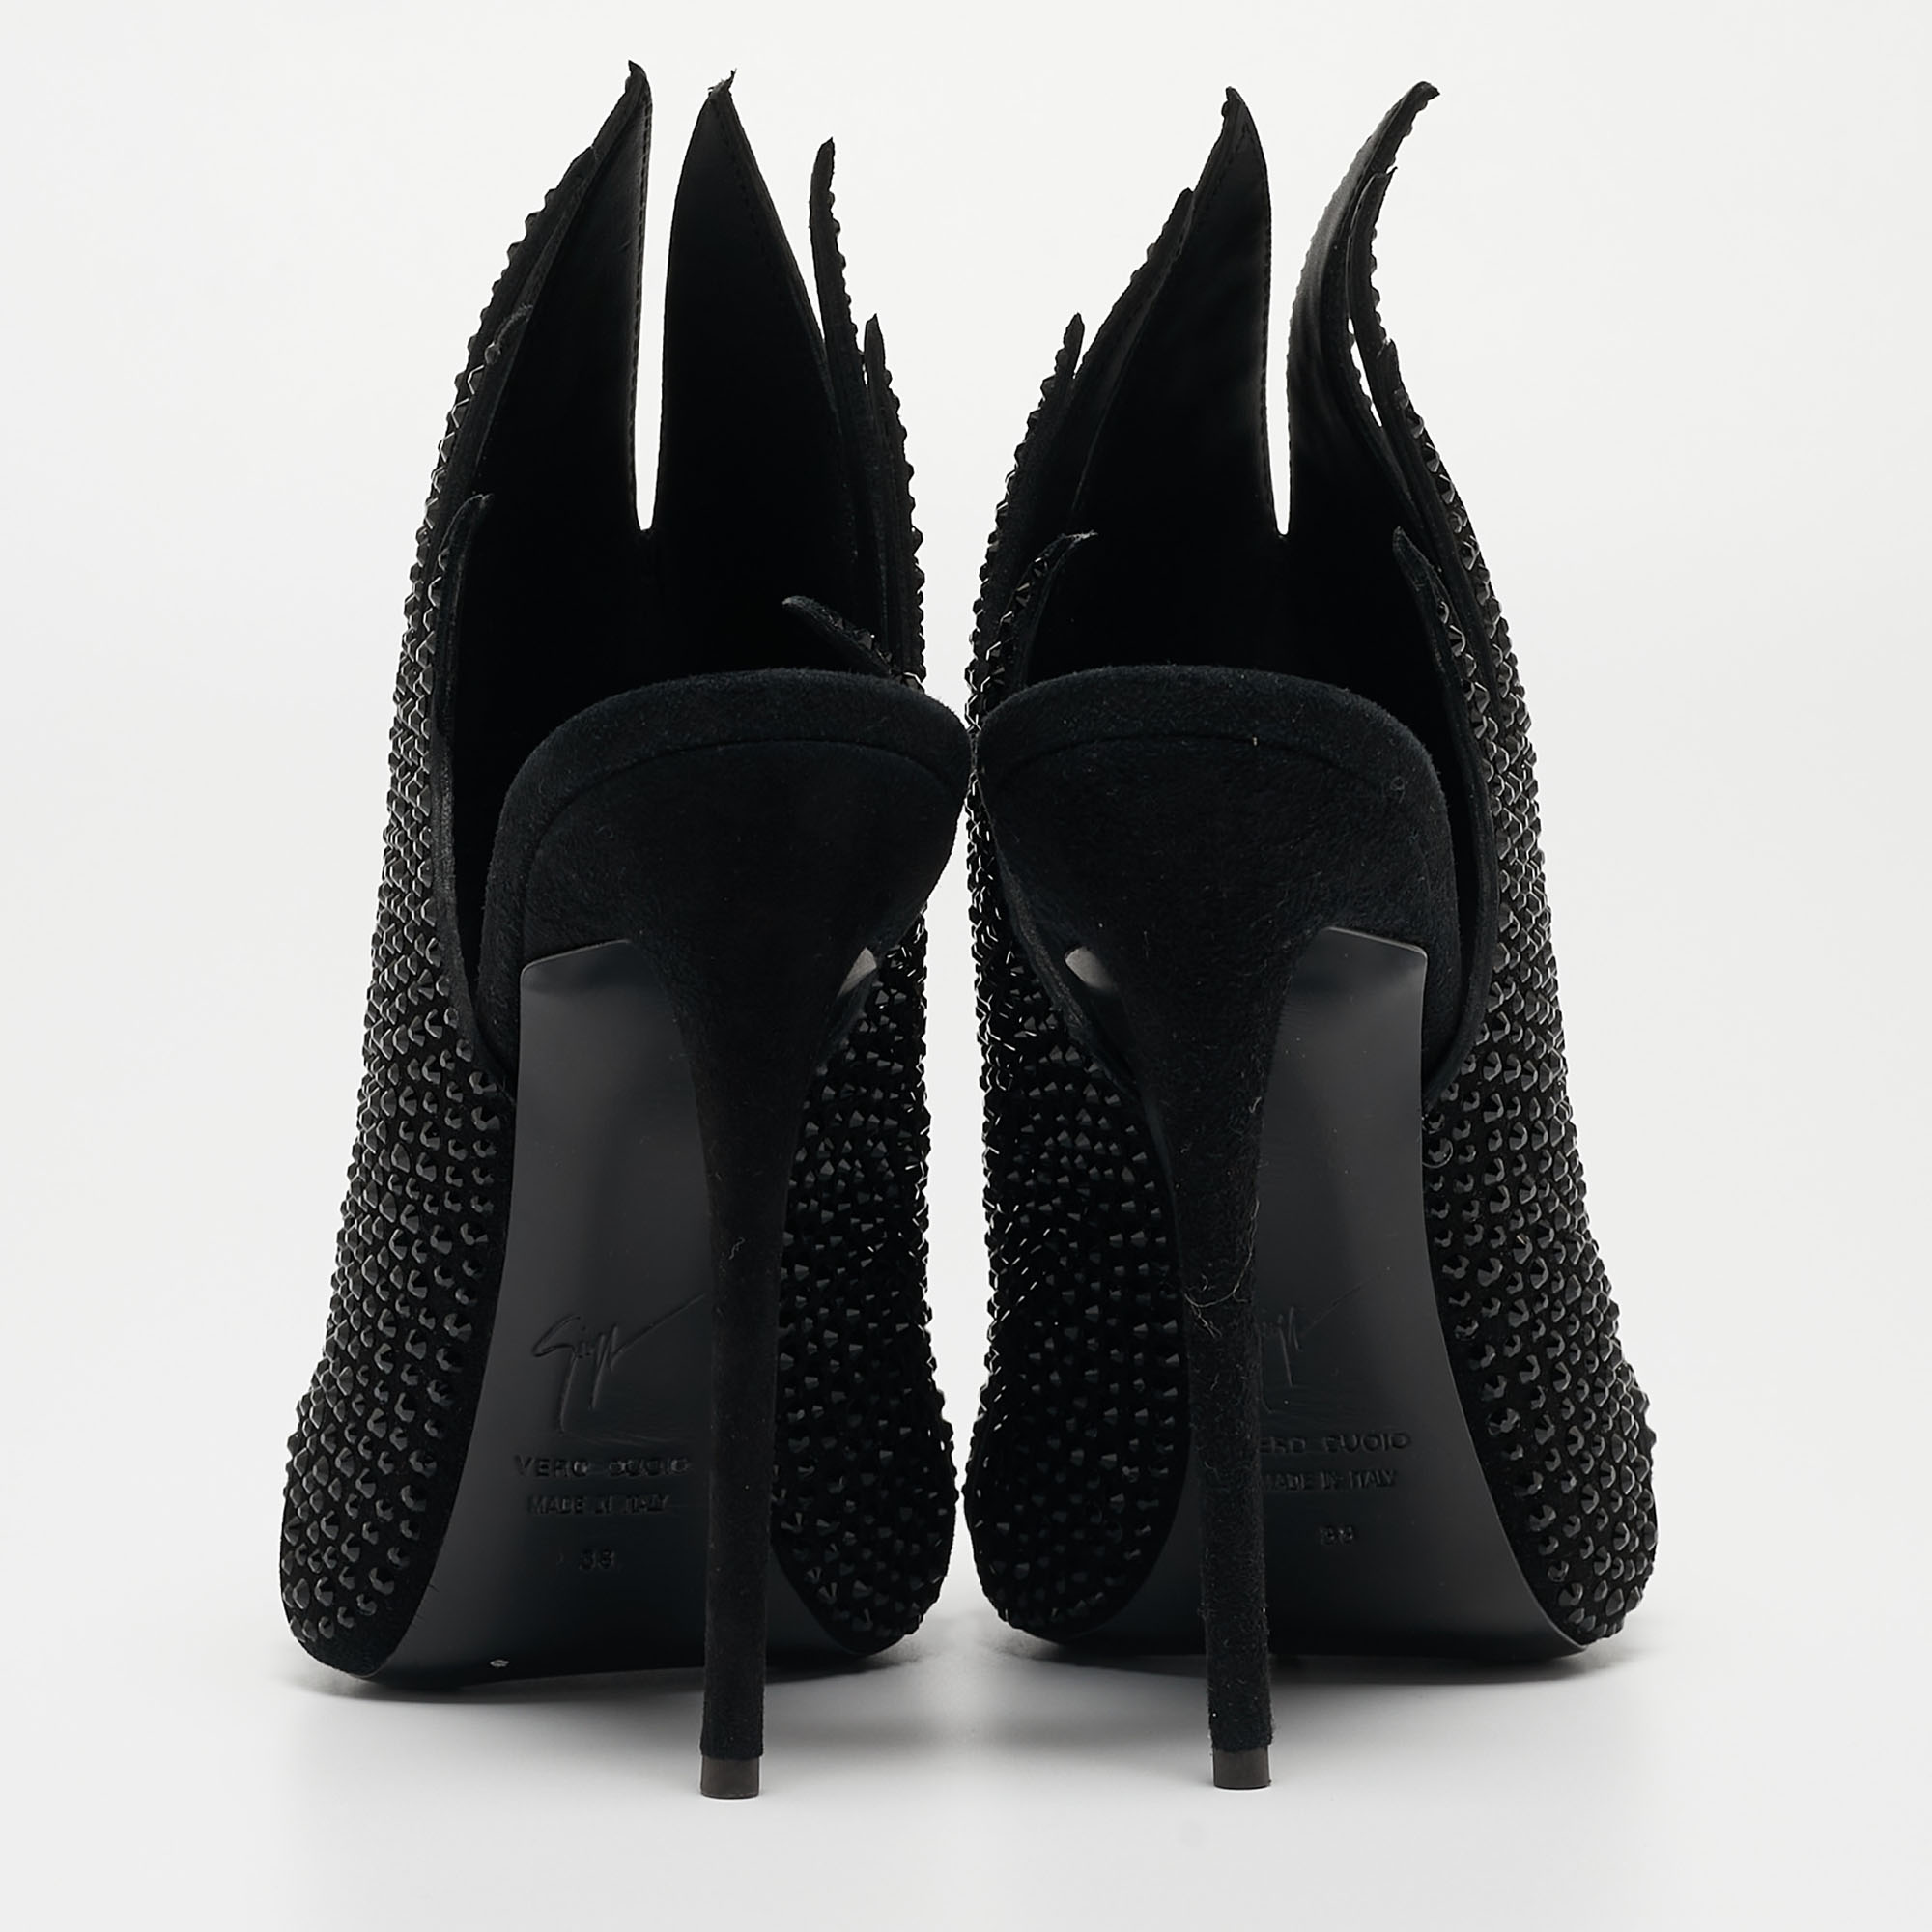 Giuseppe Zanotti Black Crystal Embellished Suede Open Toe Mules Size 38